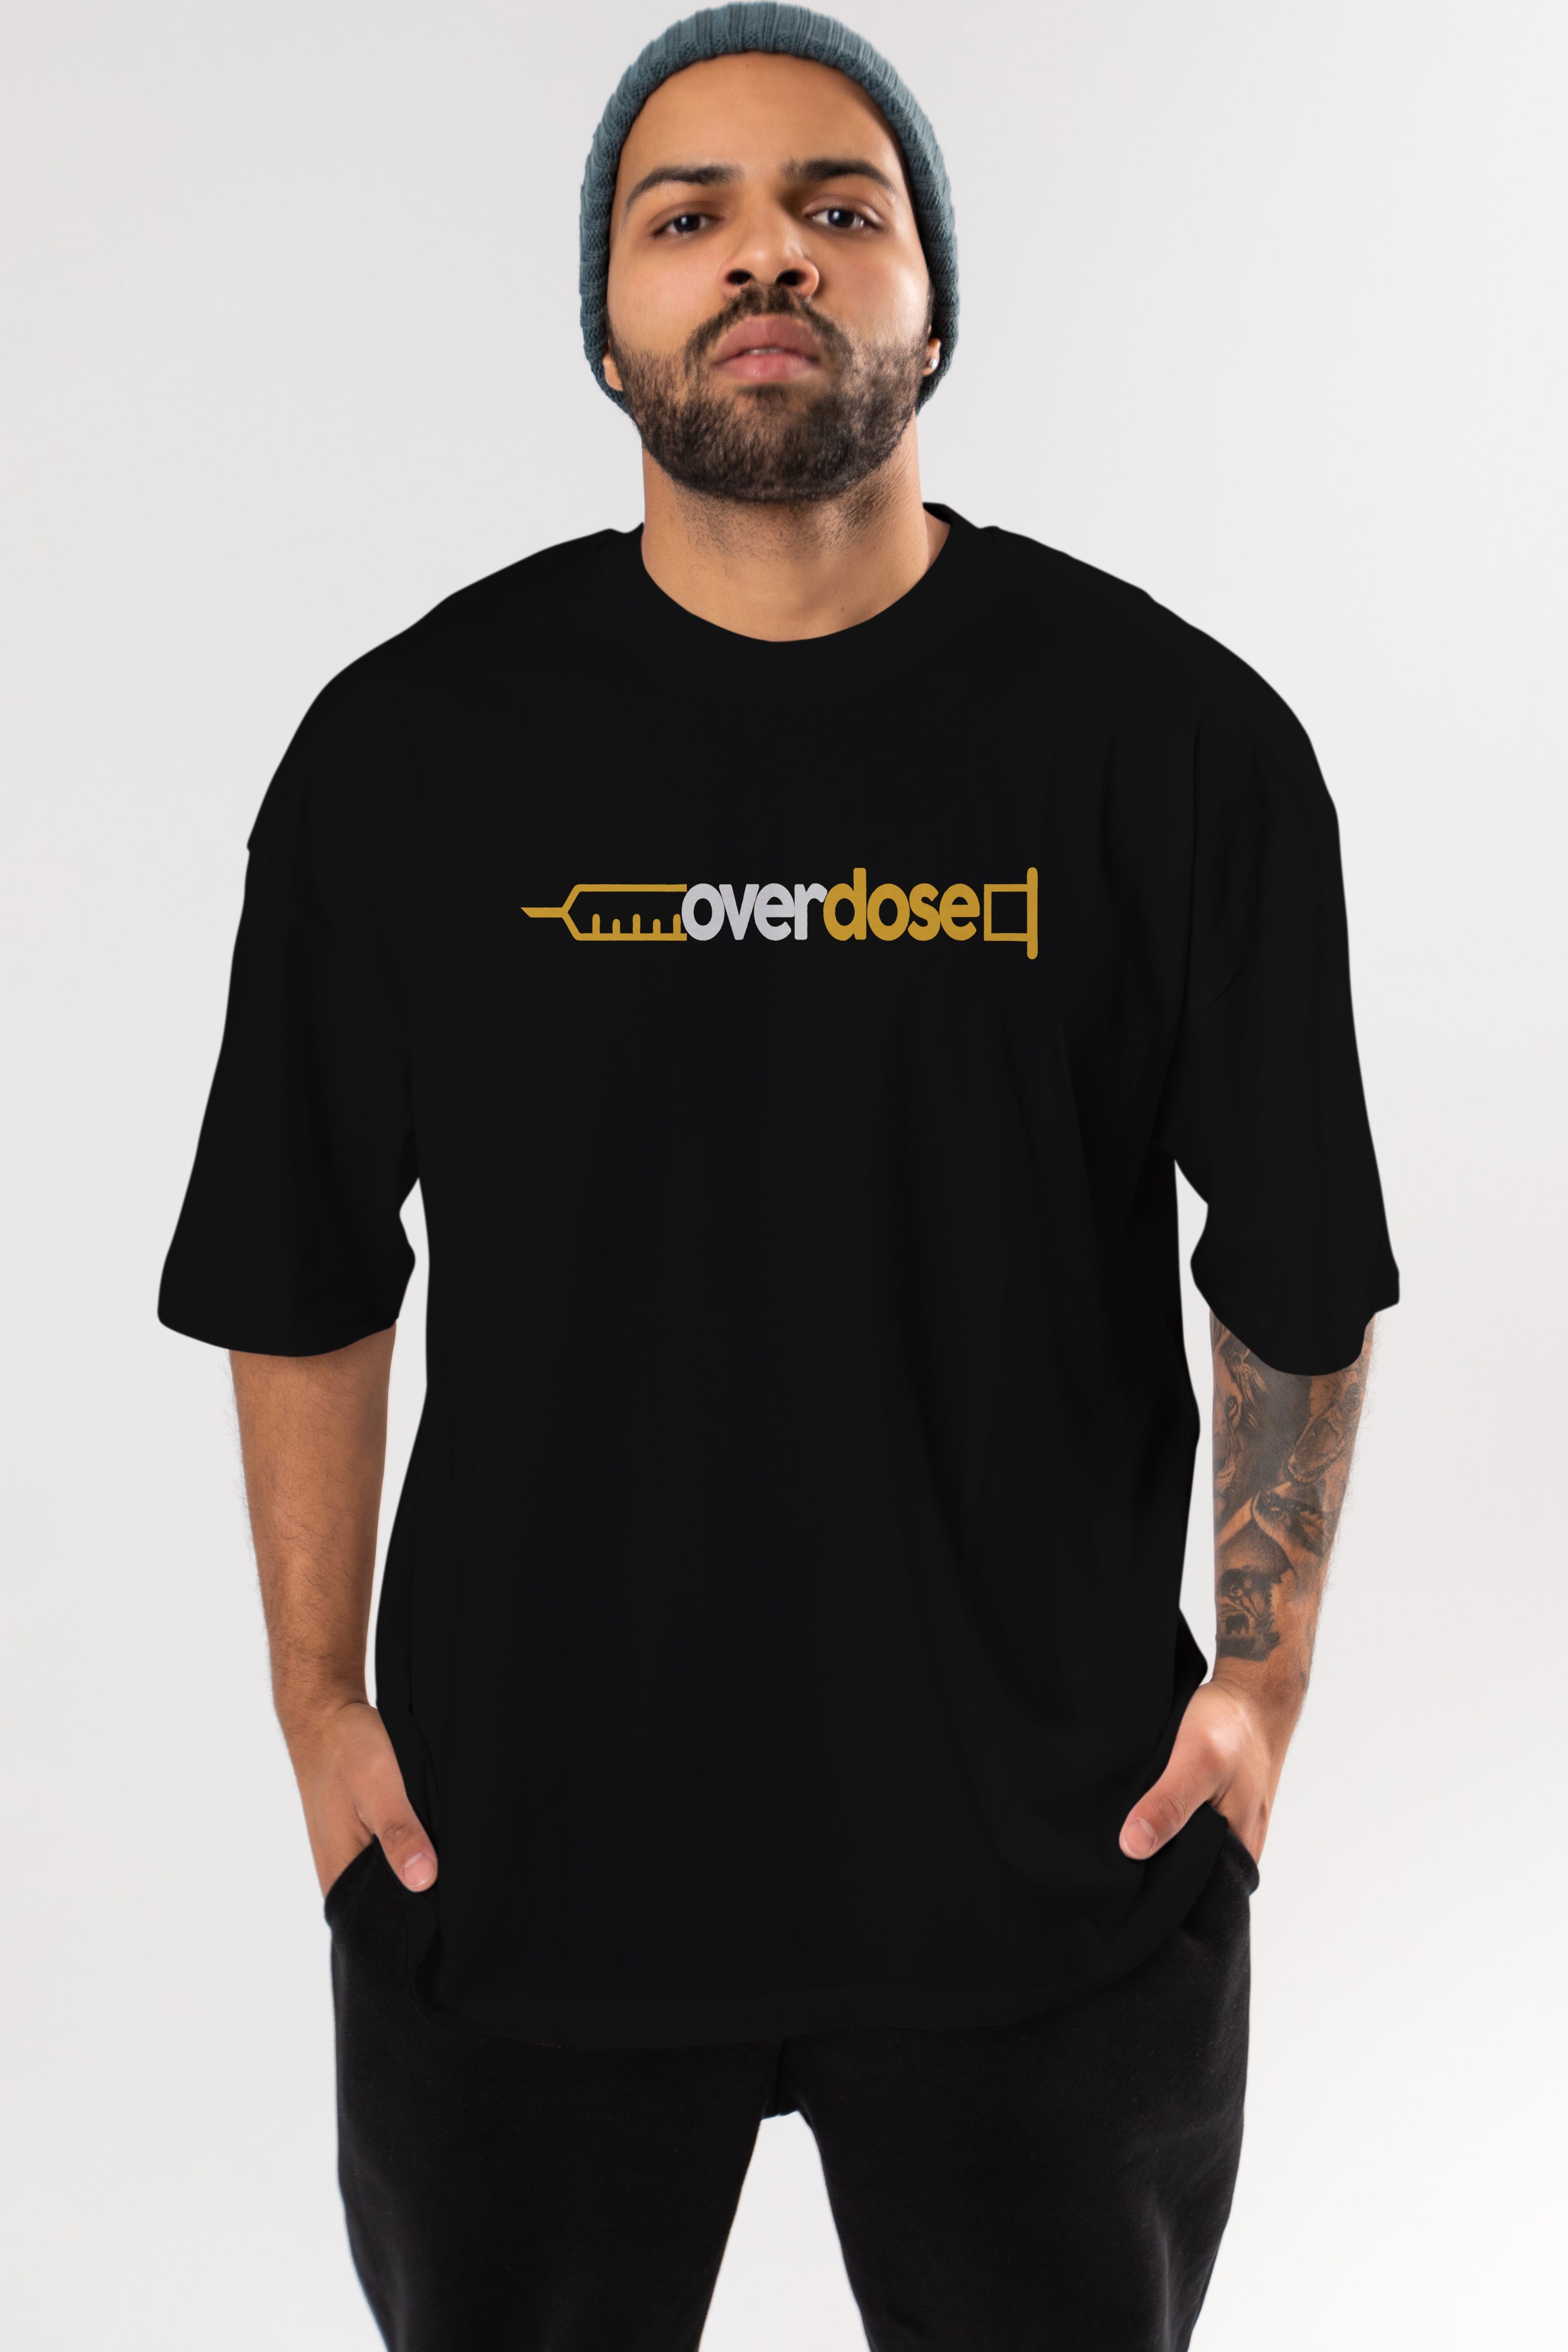 Overdose sarı Ön Baskılı Oversize t-shirt %100 pamuk Erkek Kadın Unisex